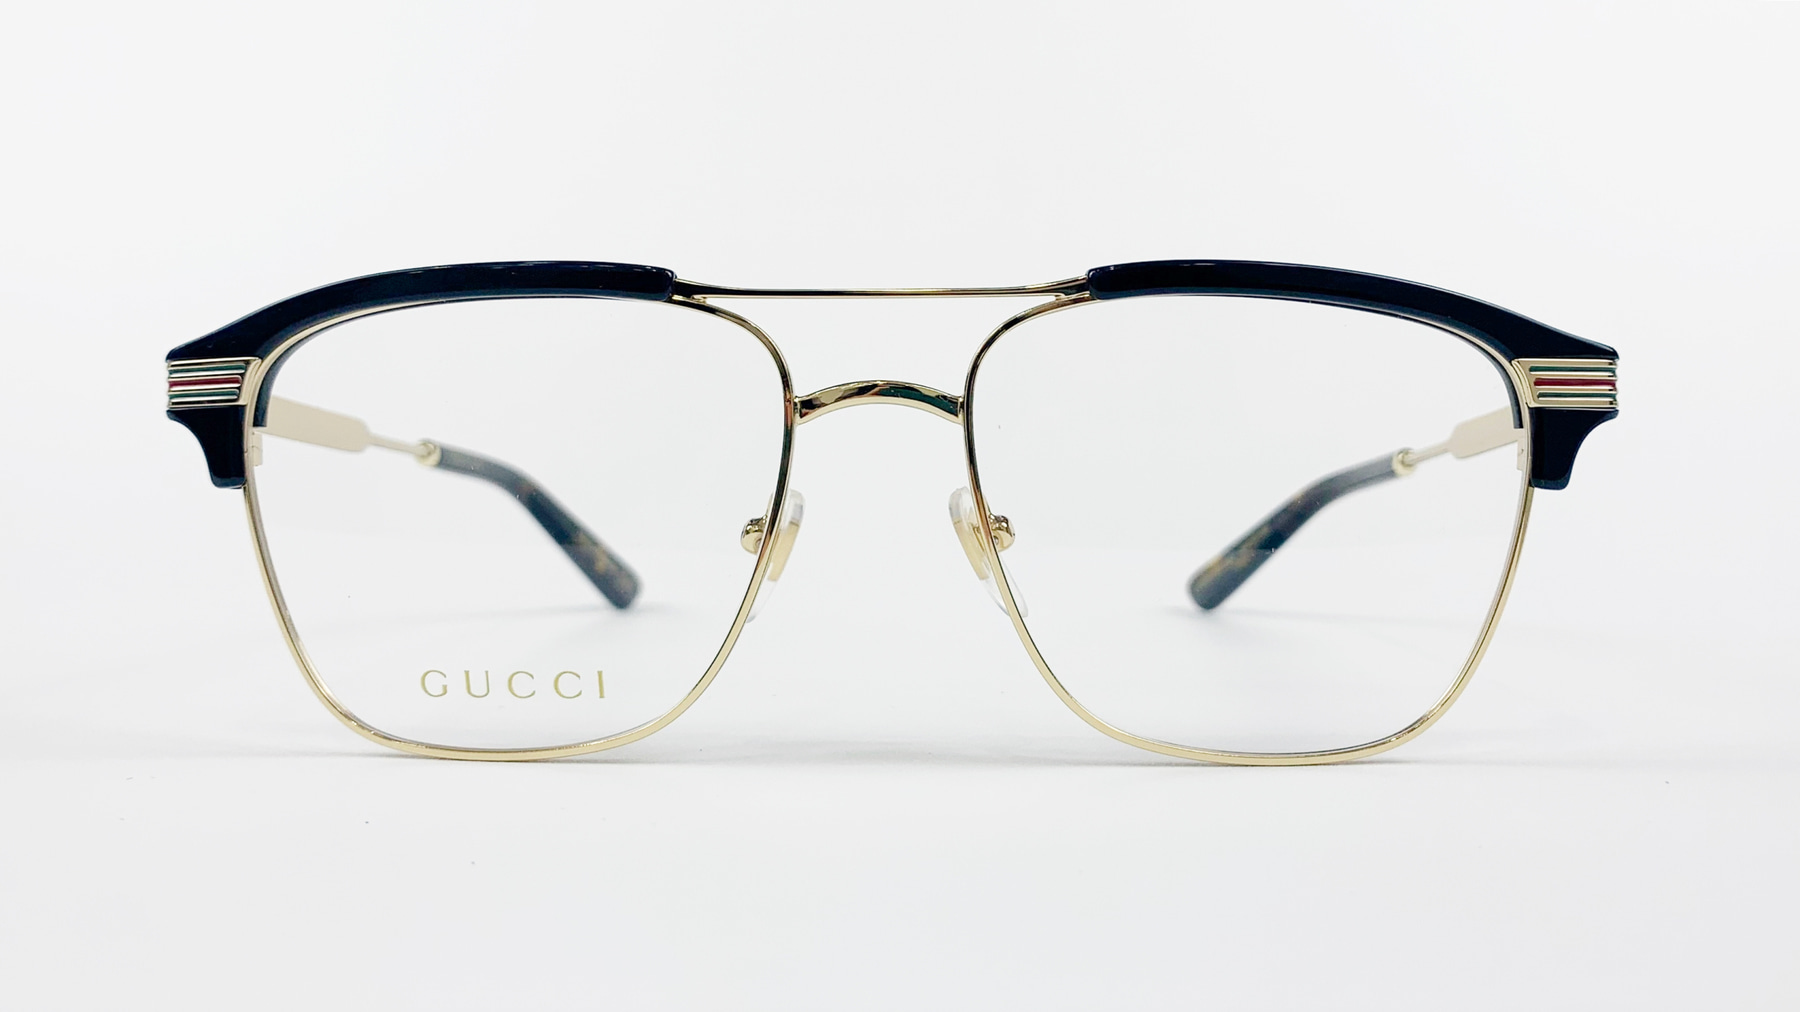 GUCCI GG0241O, Korean glasses, sunglasses, eyeglasses, glasses